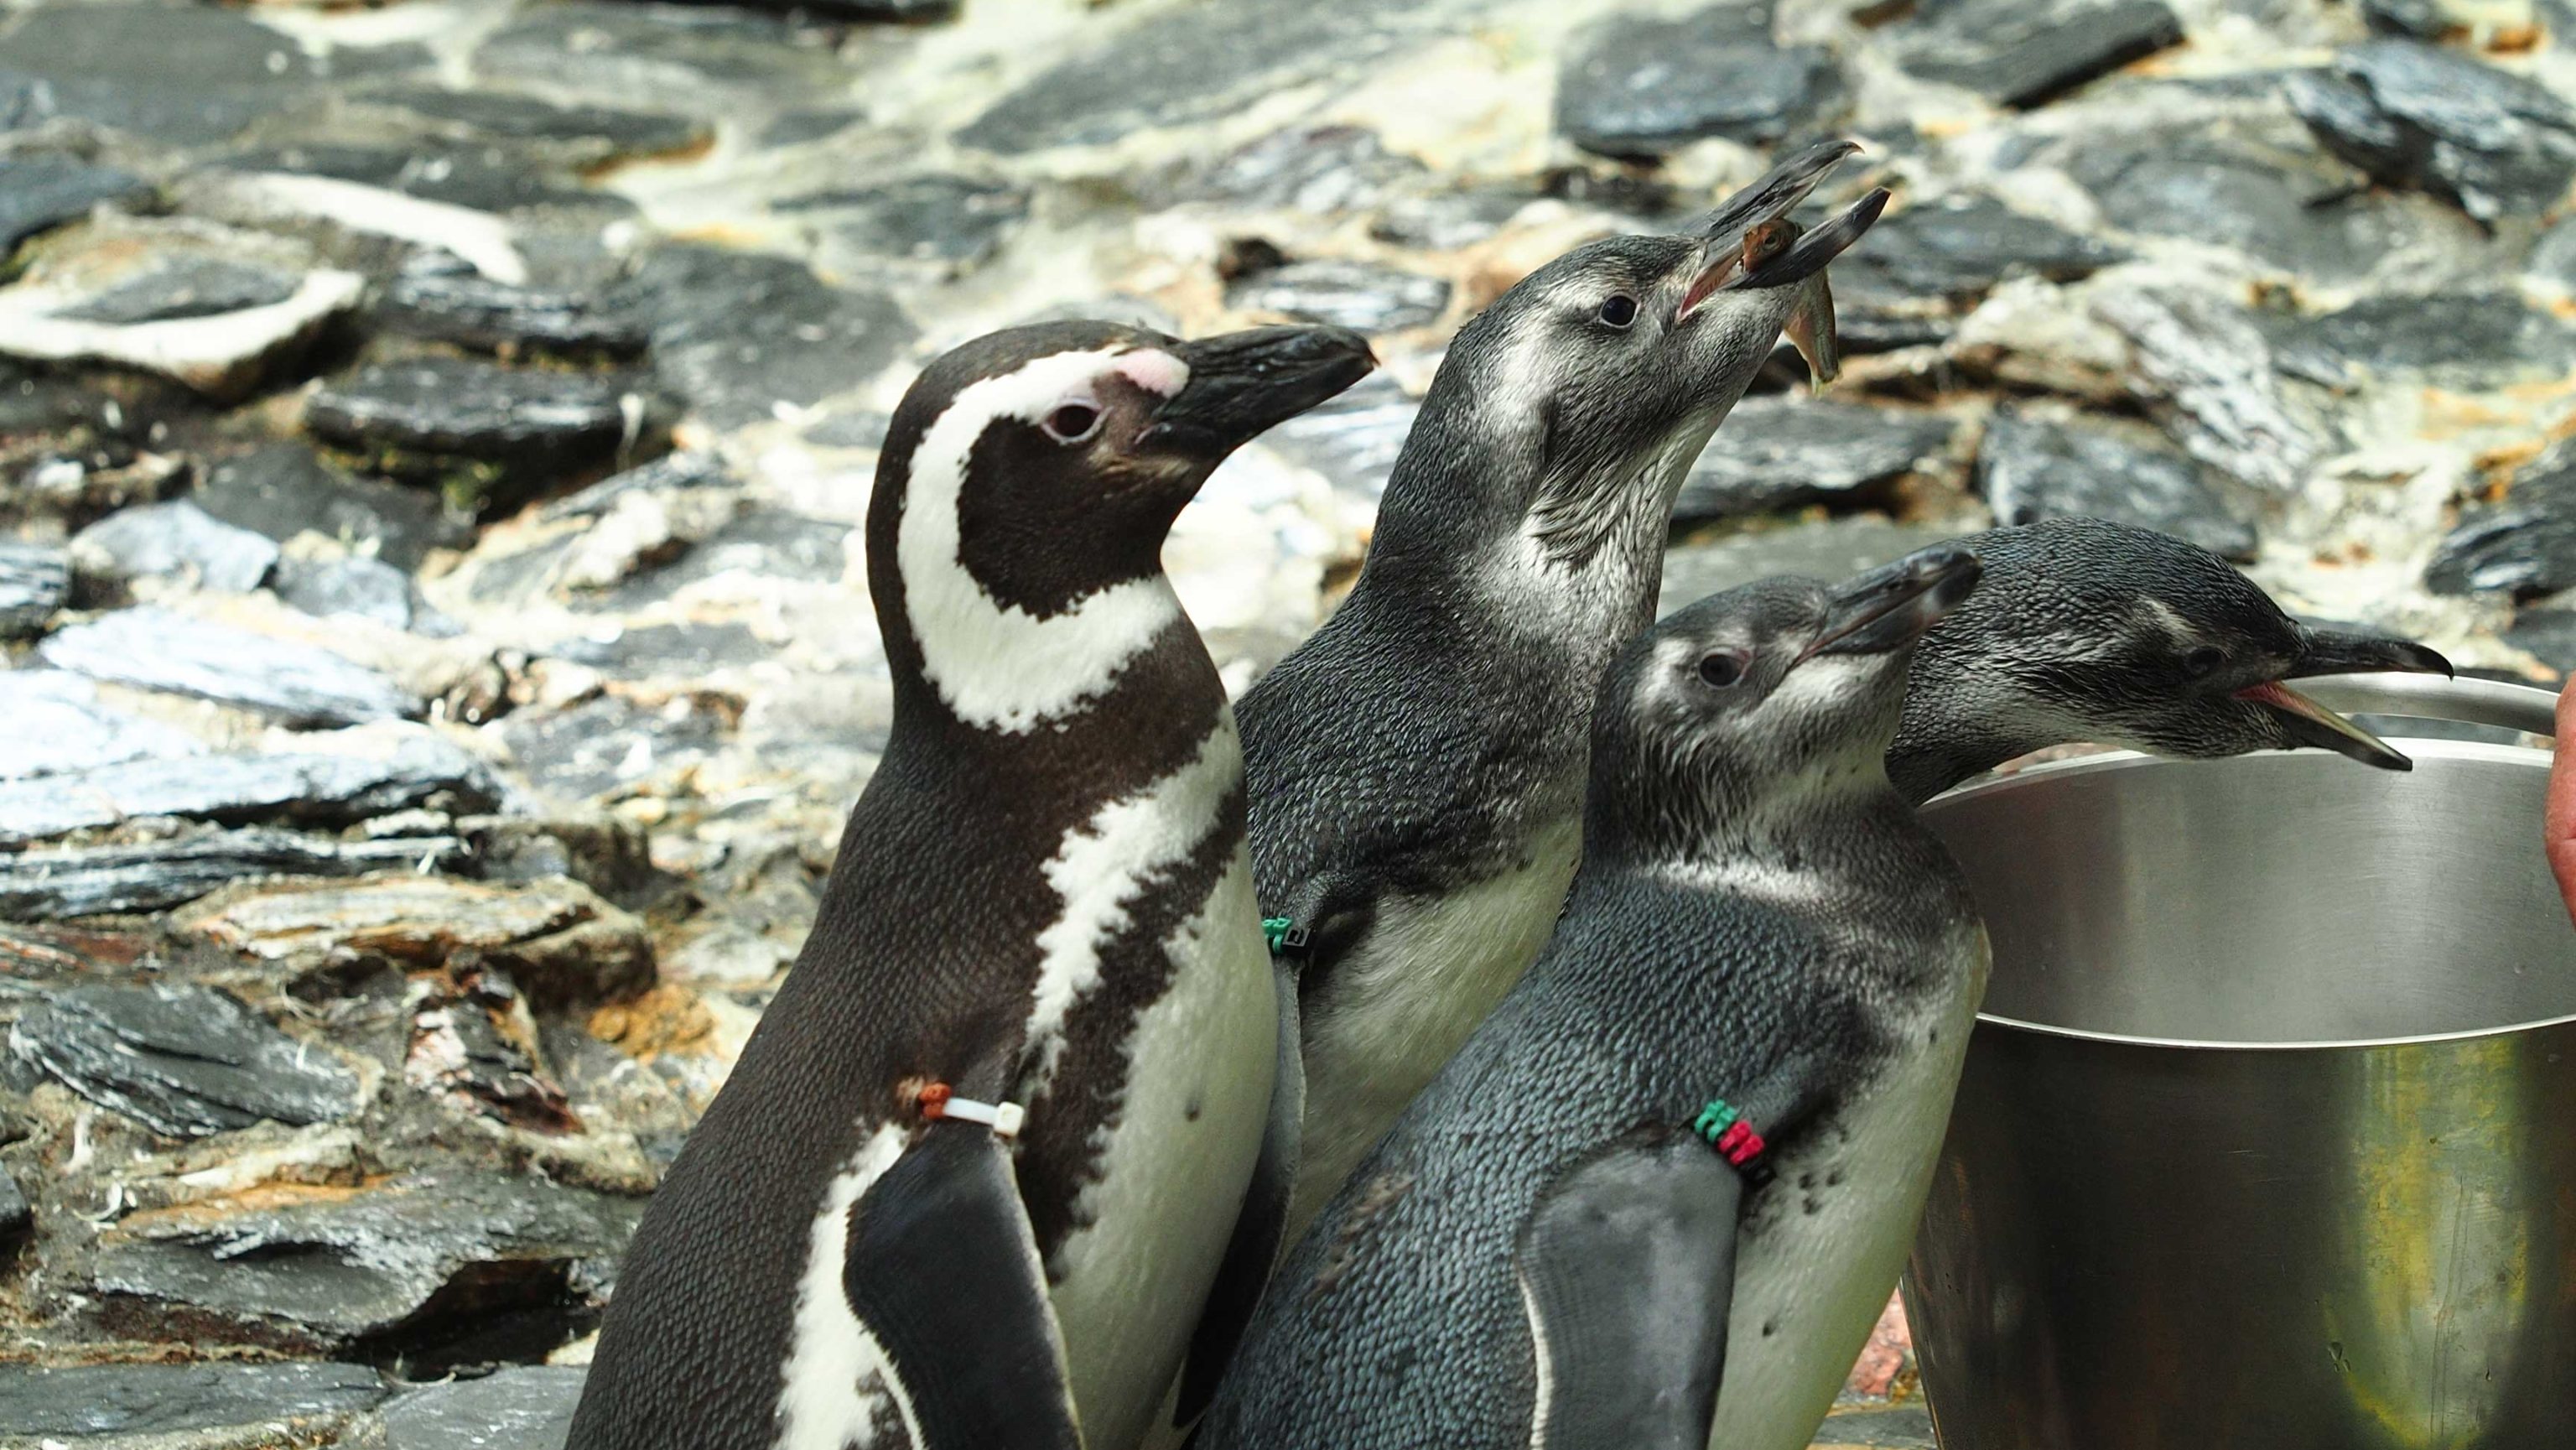 Avistada pela primeira vez há 500 anos pelo explorador português Fernão de Magalhães de que derivou o seu nome, os pinguins-de-magalhães apresentam uma esperança média de vida de 25 anos